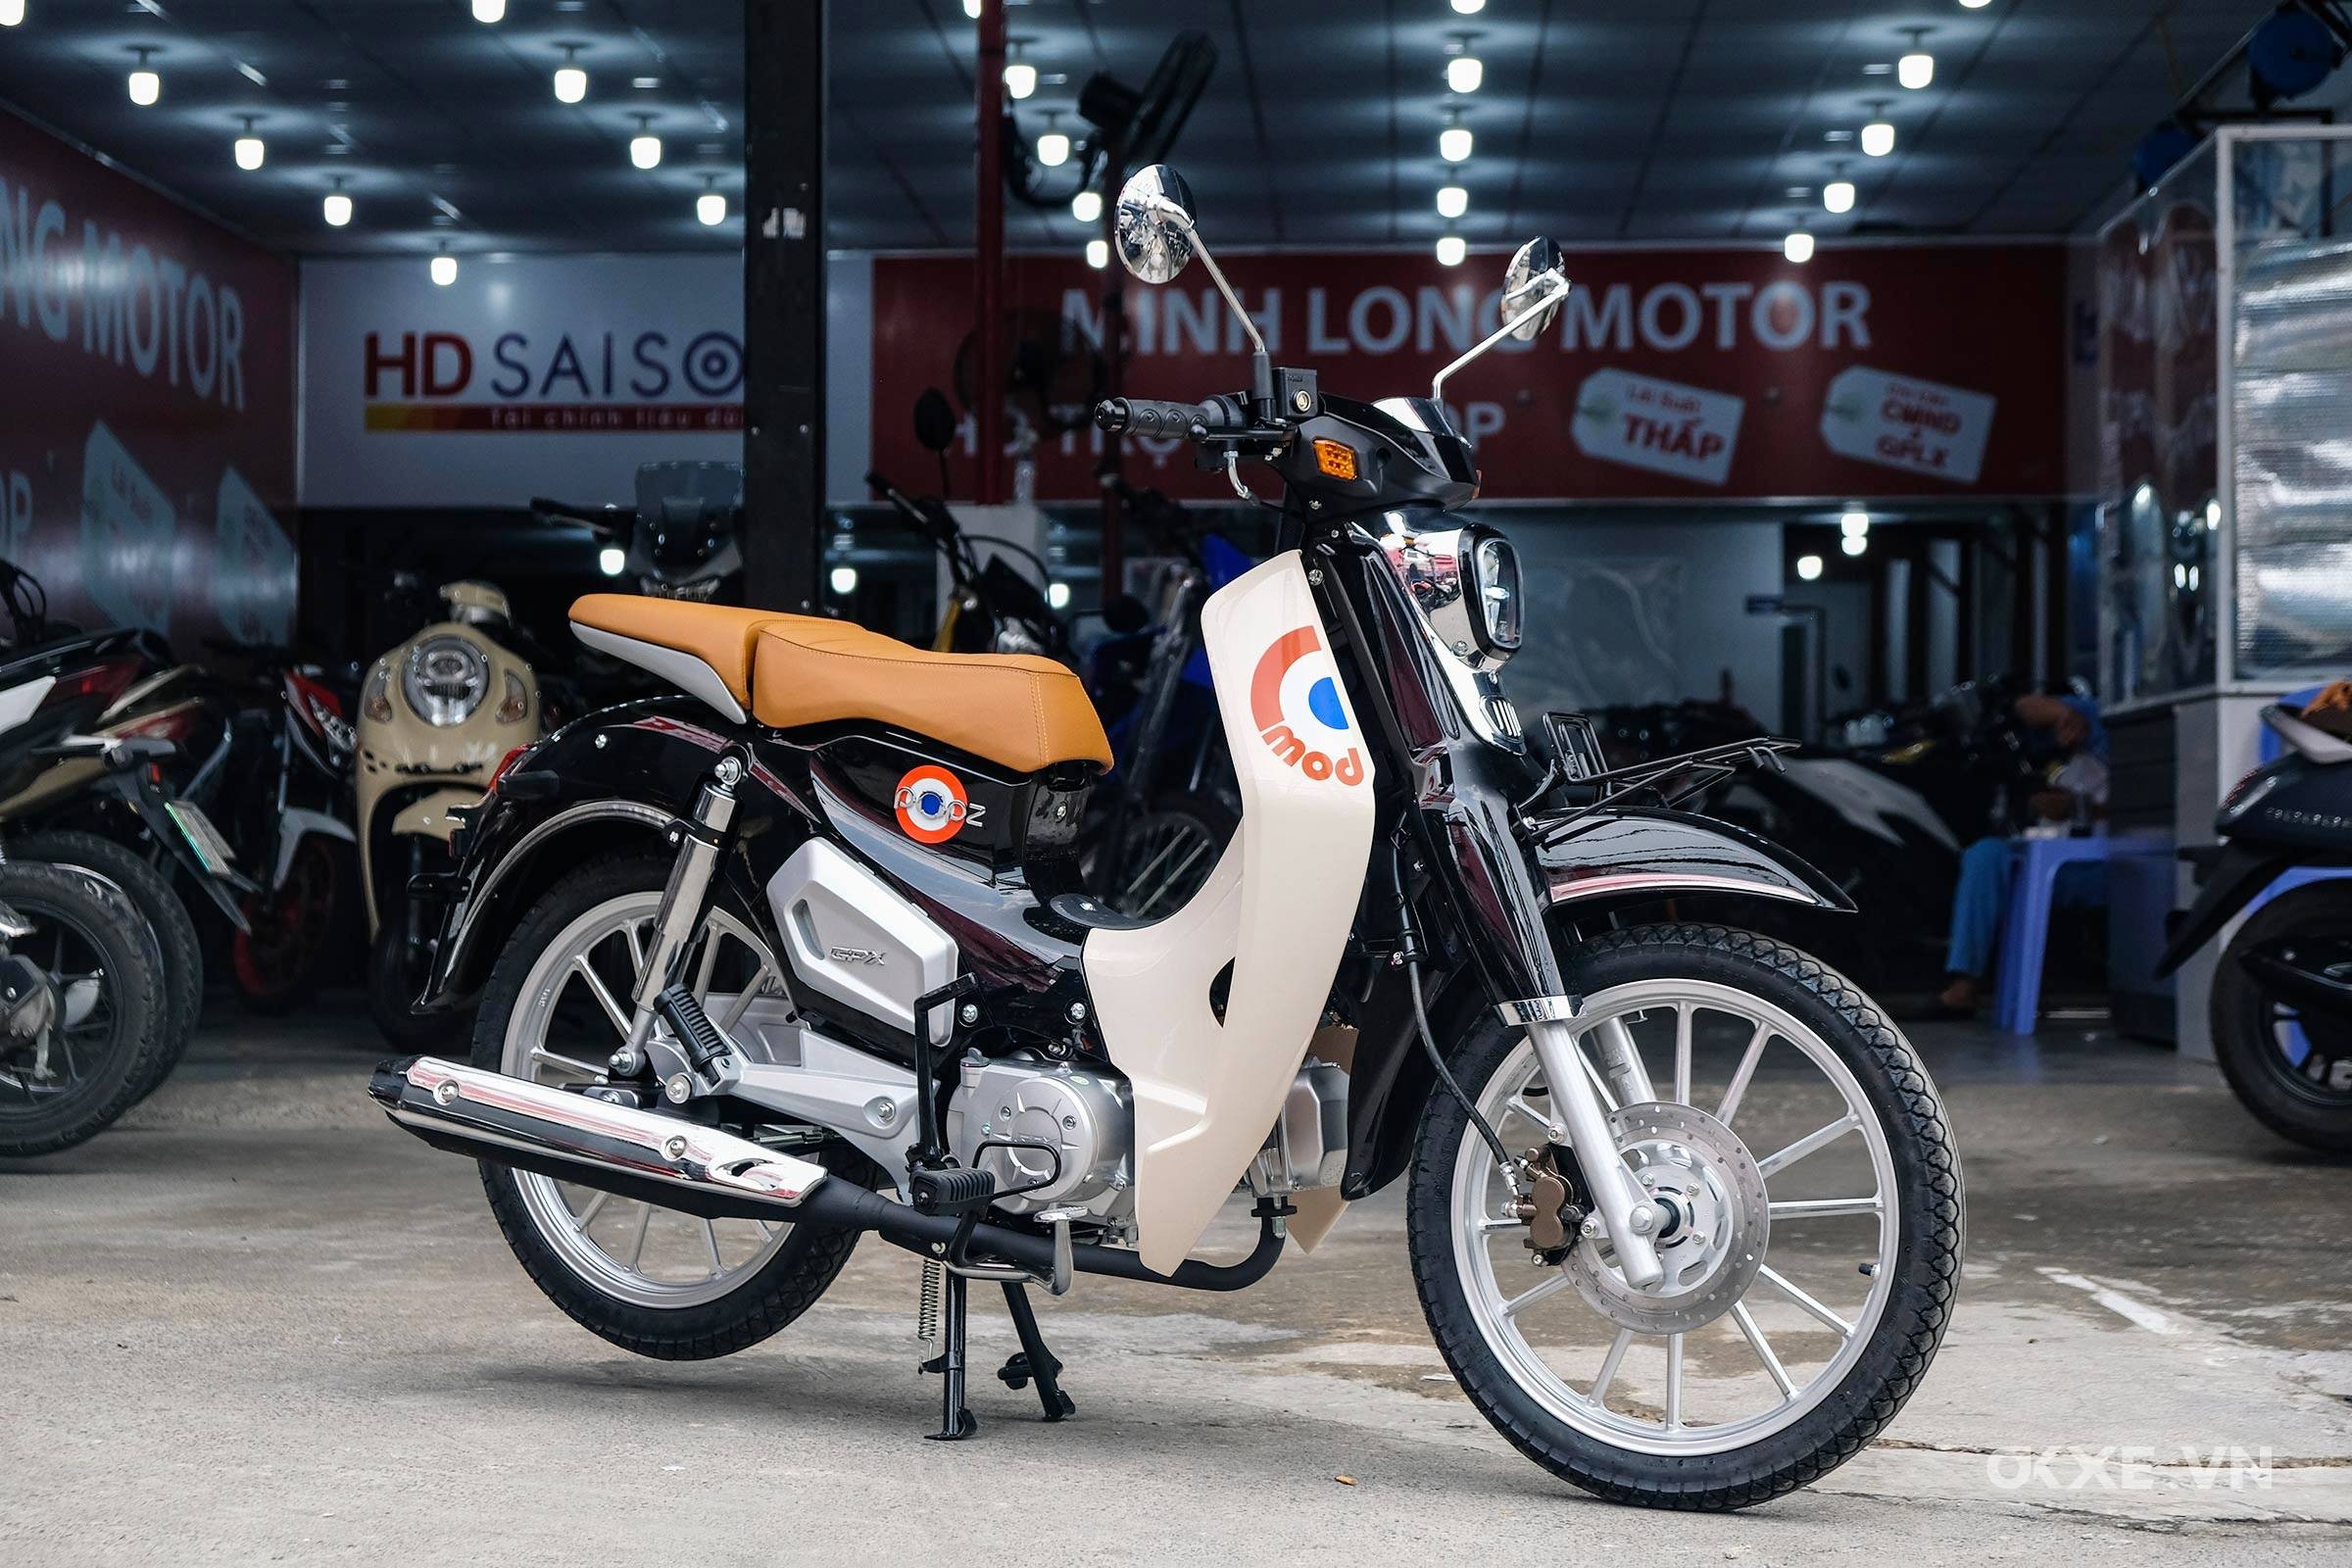 Thuê xe máy ở Thái Lan  trải nghiệm du lịch đáng nhớ